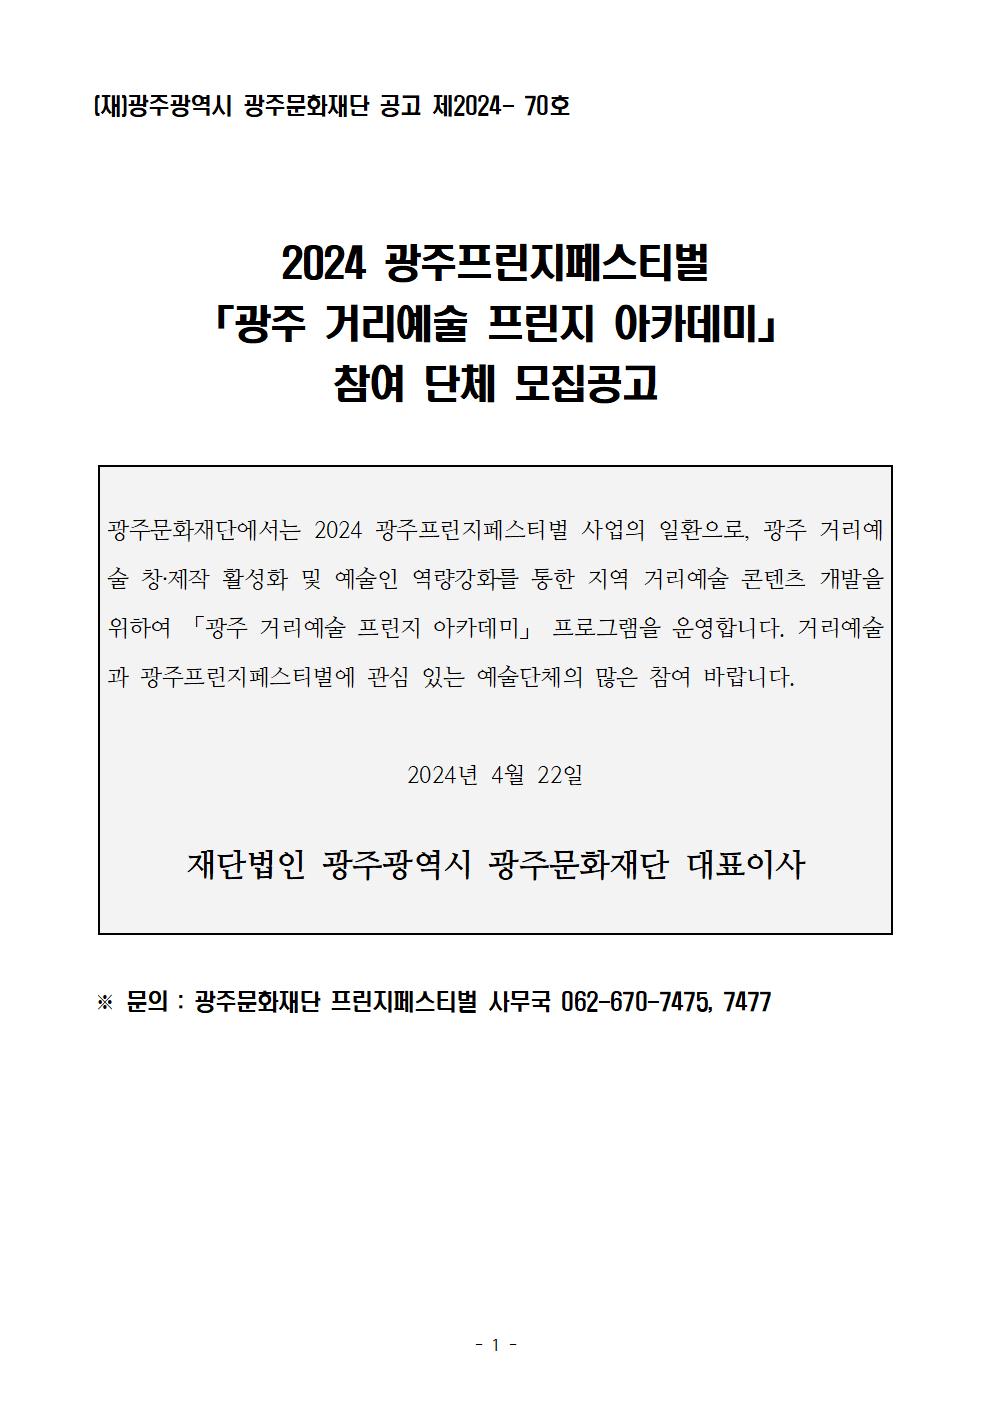 2024 광주프린지페스티벌 「광주 거리예술 프린지 아카데미」 참여단체 모집 공고문001.jpg